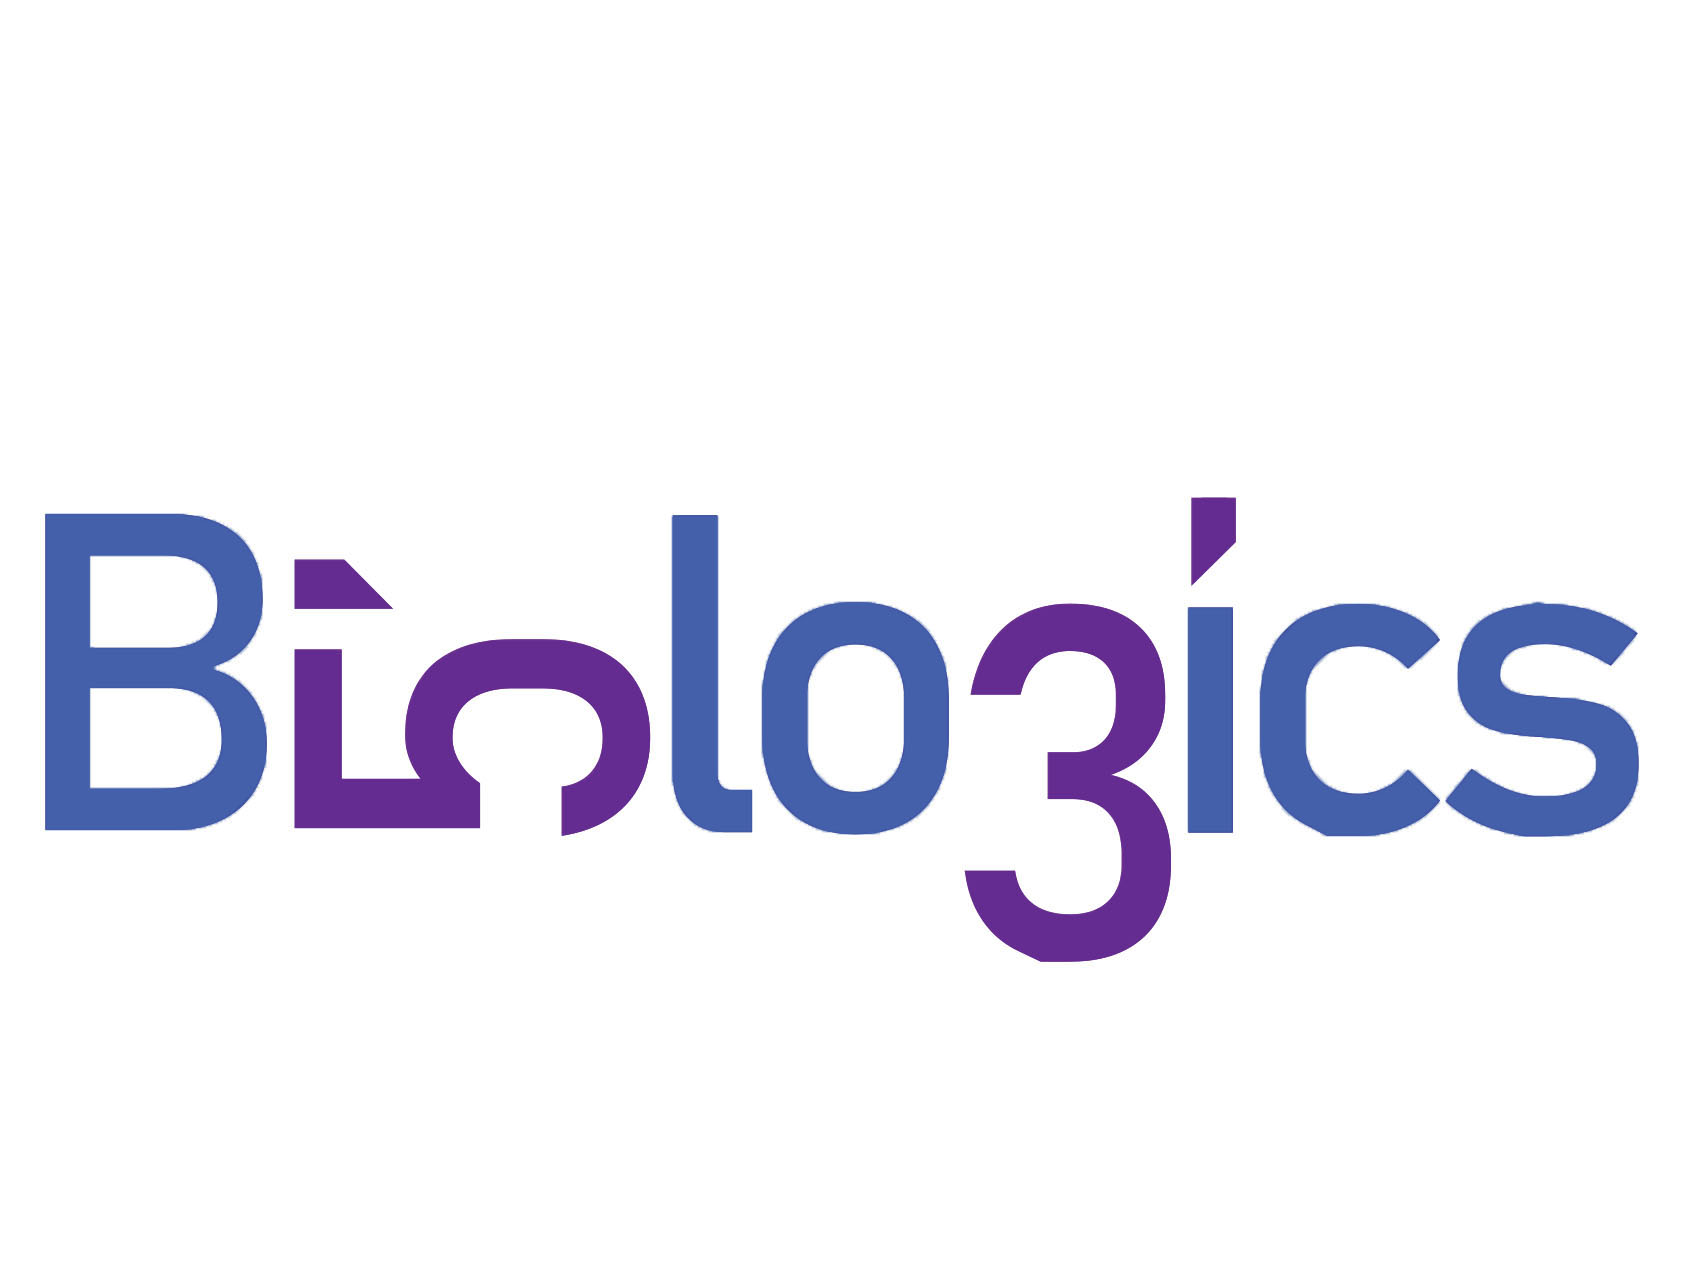 53biologocis logo